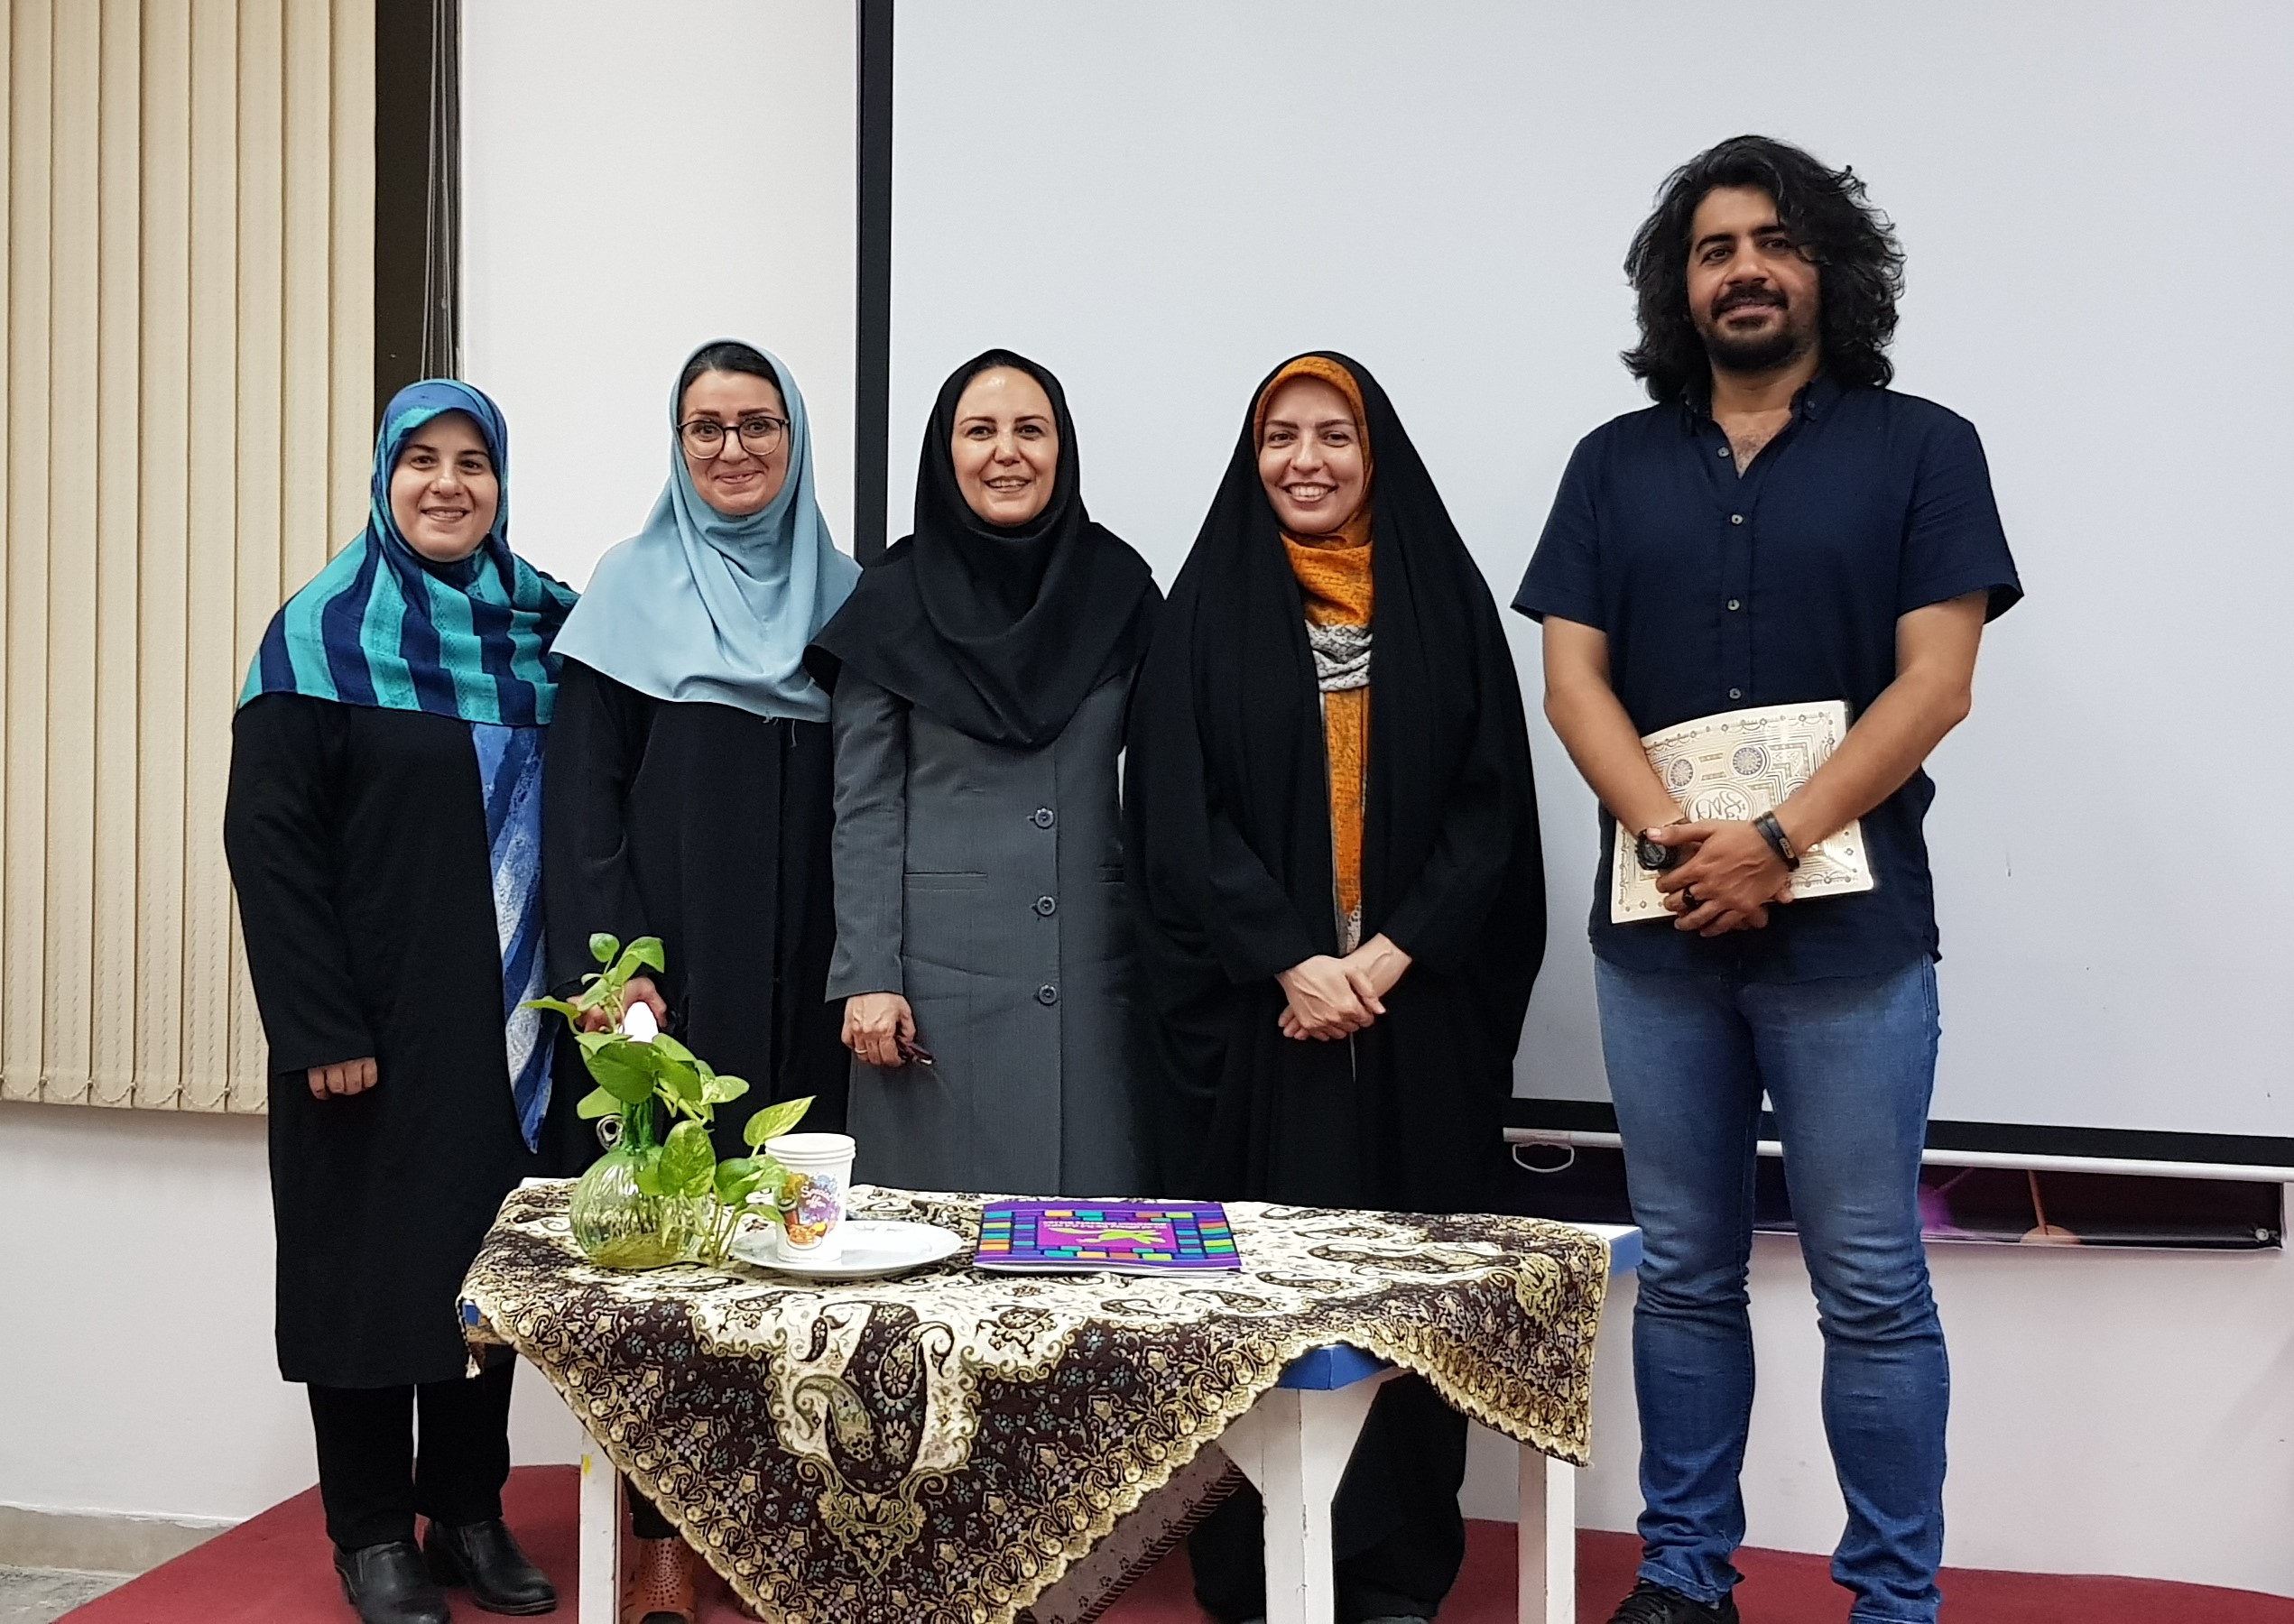 سومین جلسه انجمن زیست شناسی کانون استان تهران برگزار شد